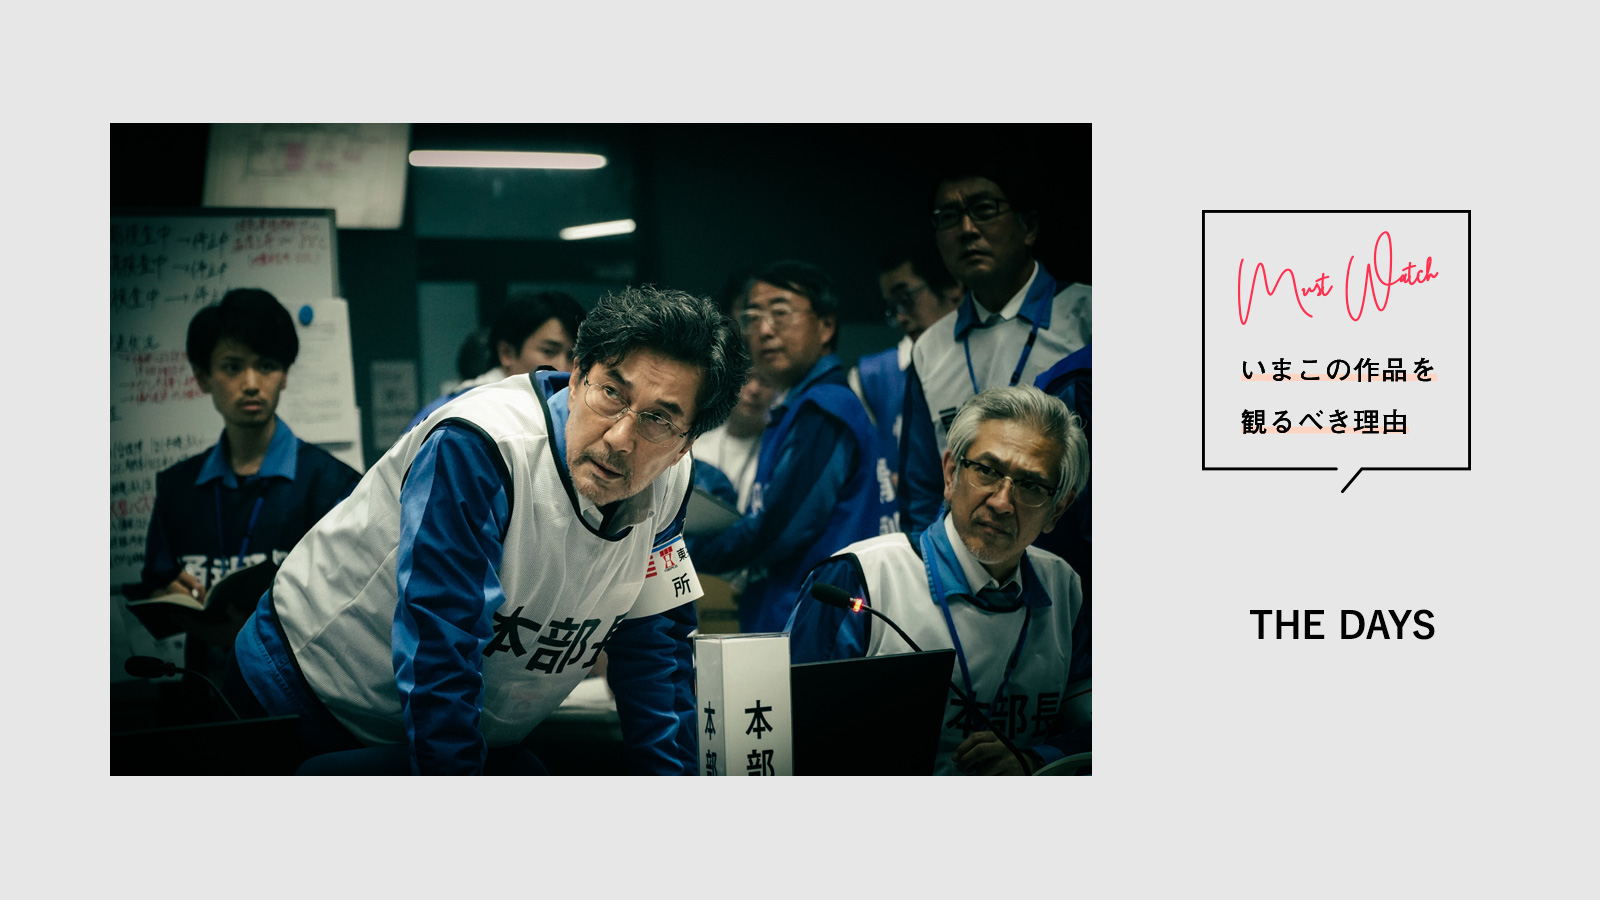 『THE DAYS』はグローバル市場における日本ドラマの成果と課題を示している | いまこの作品を観るべき理由